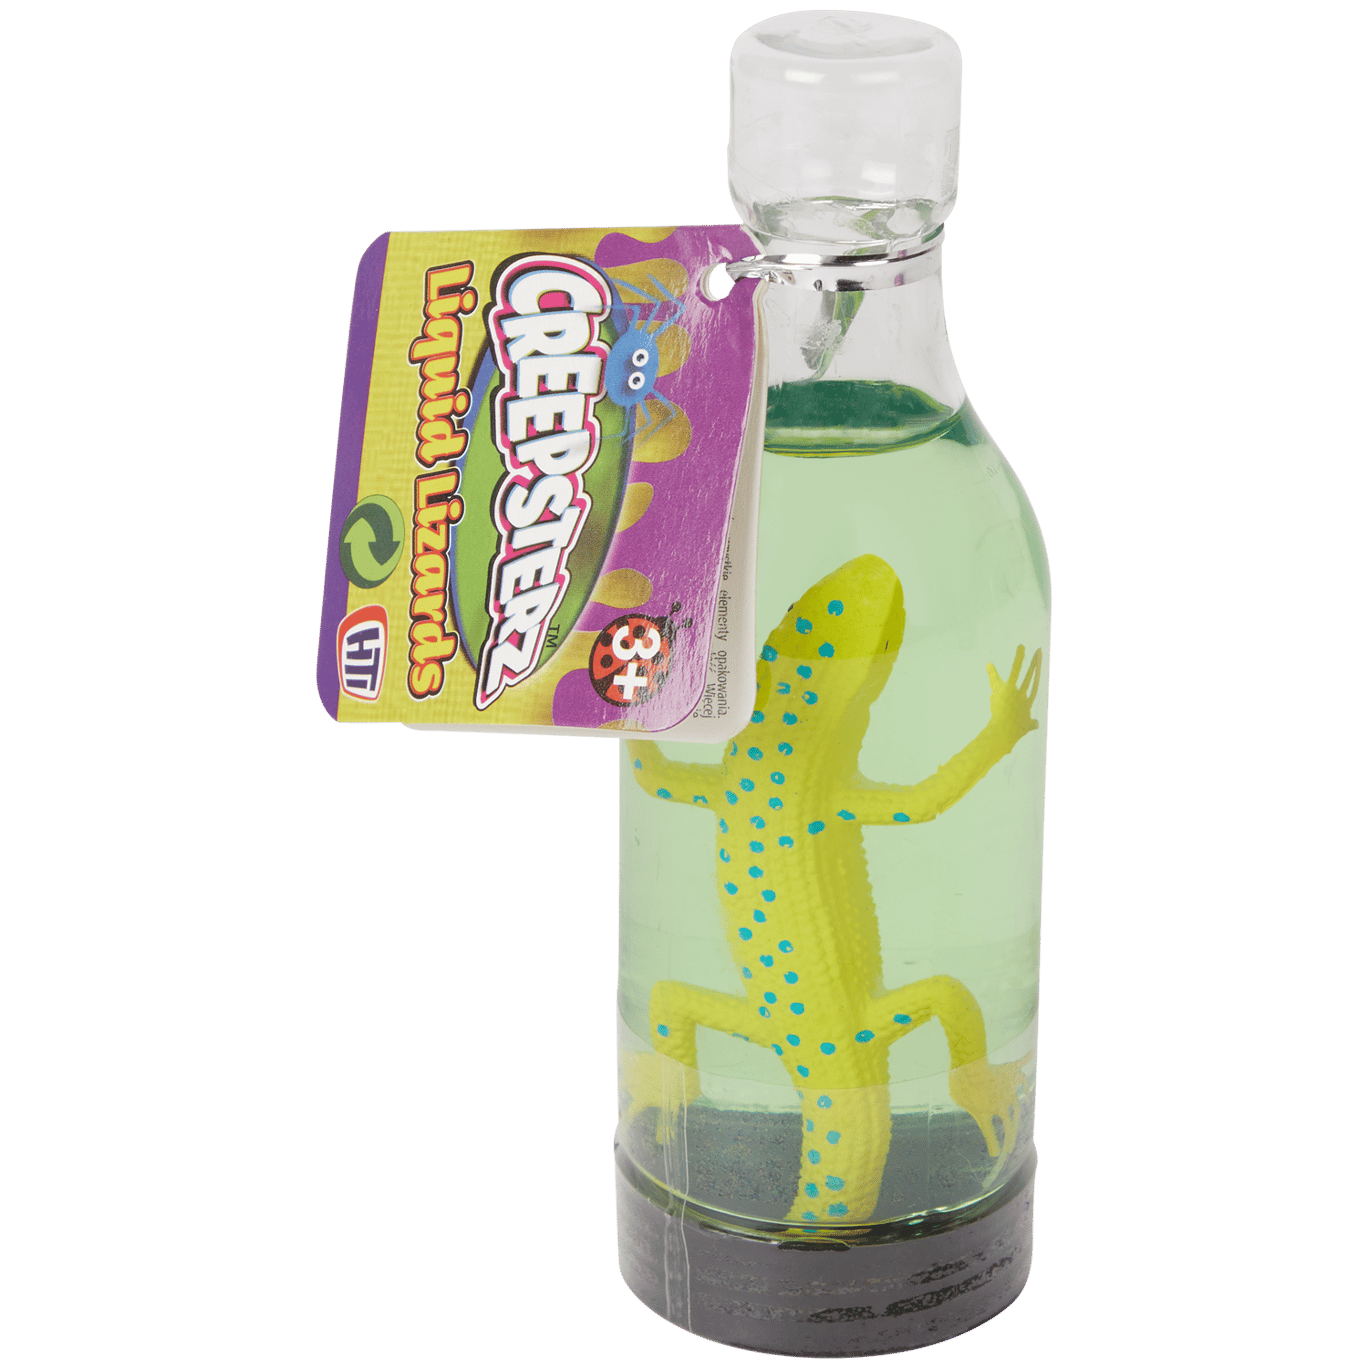 Animal dans un bouteille avec slime